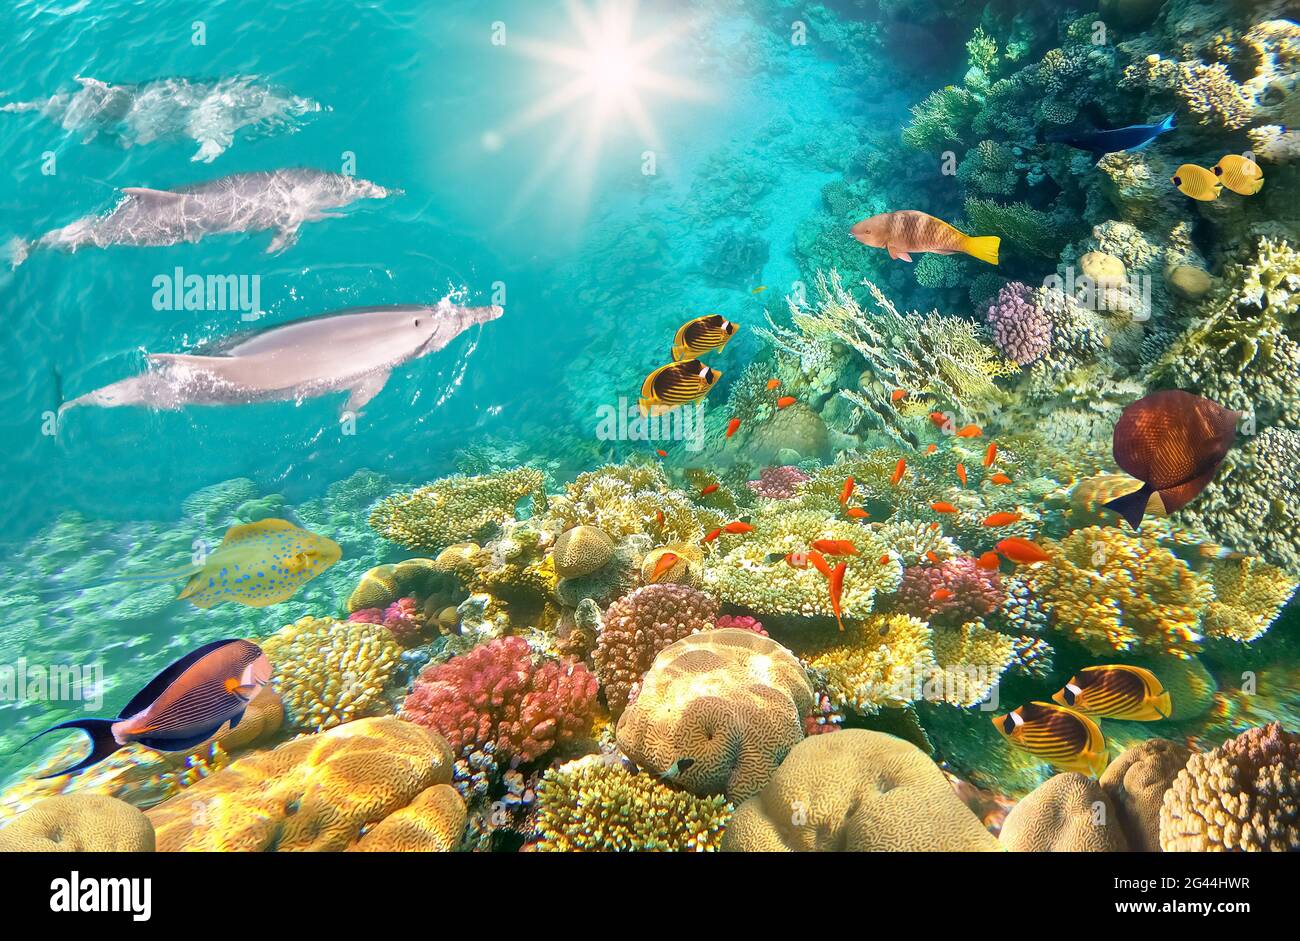 Scène sous-marine avec dauphins et récif de corail coloré plein de poissons rouges. Carte postale de la vie marine Banque D'Images